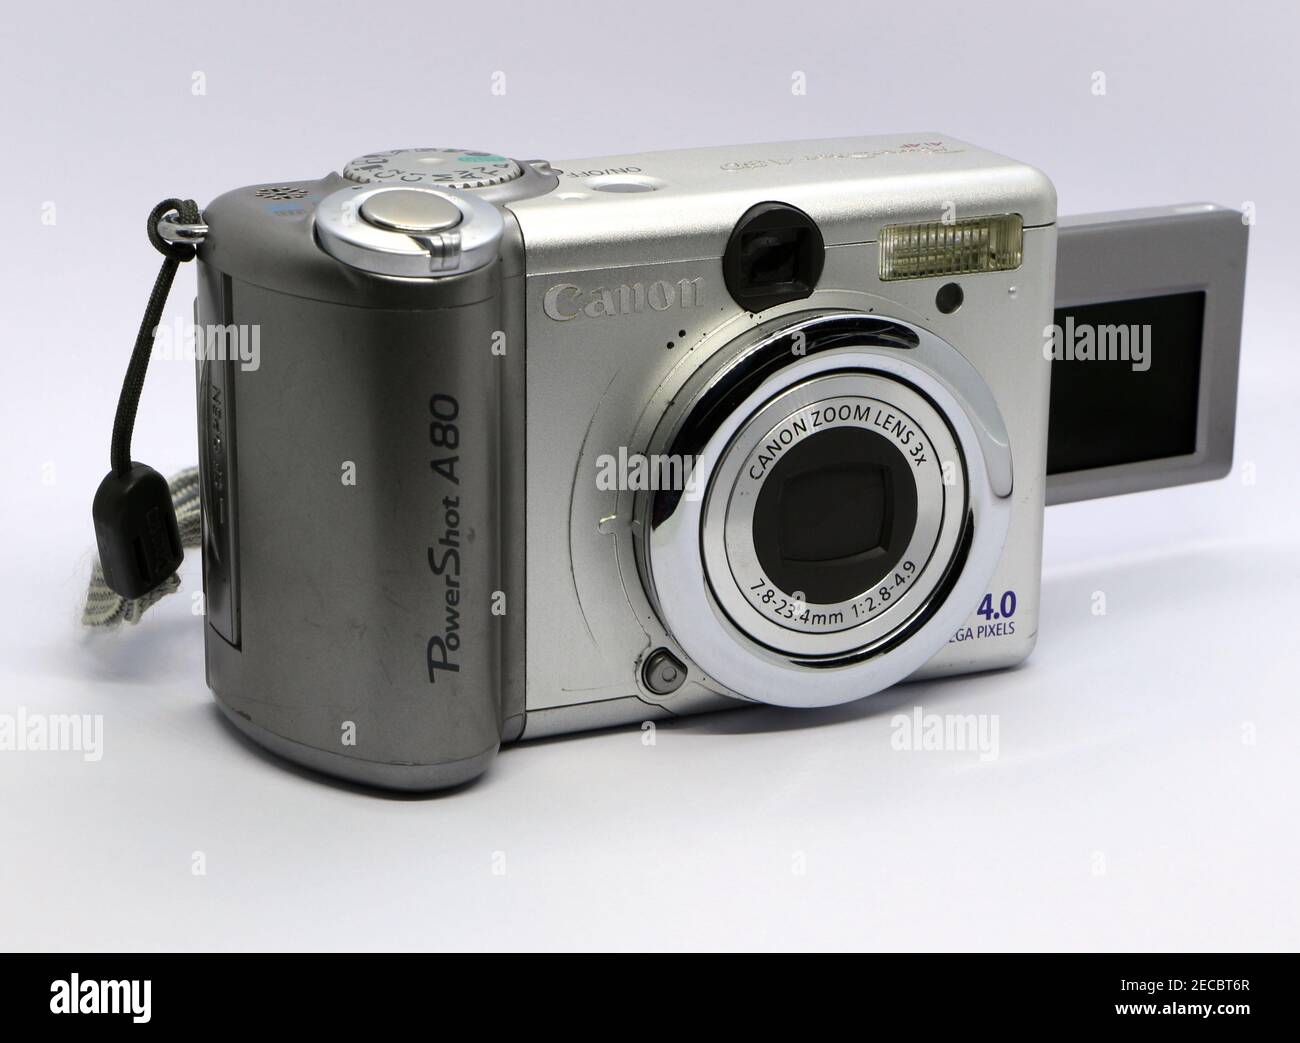 Photo d'un appareil photo numérique Canon PowerShot A80 4,0 mégapixels argent avec écran LCD rabattable et objectif zoom 7,8-23,4 mm sur fond blanc Banque D'Images